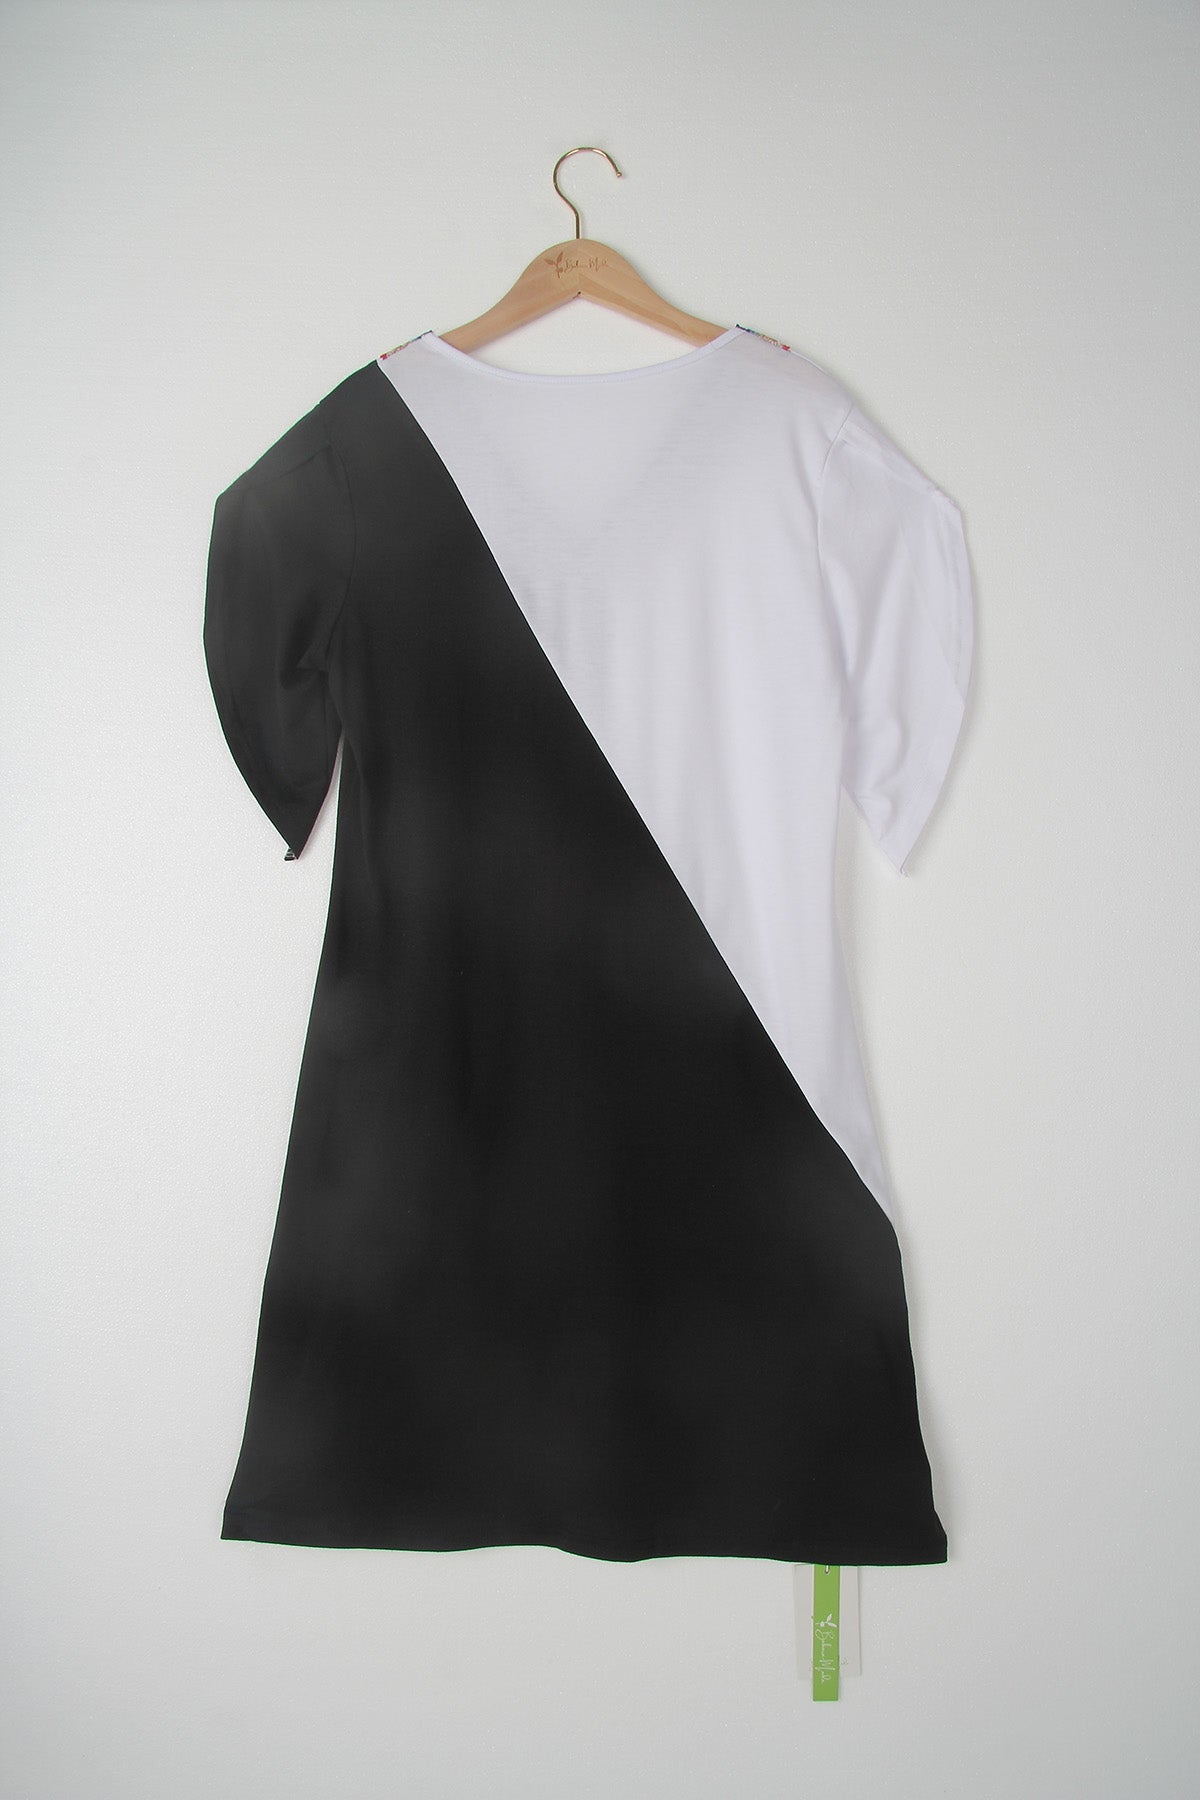 SpringStil® - Schwarz-weißes Minikleid mit kurzen Ärmeln